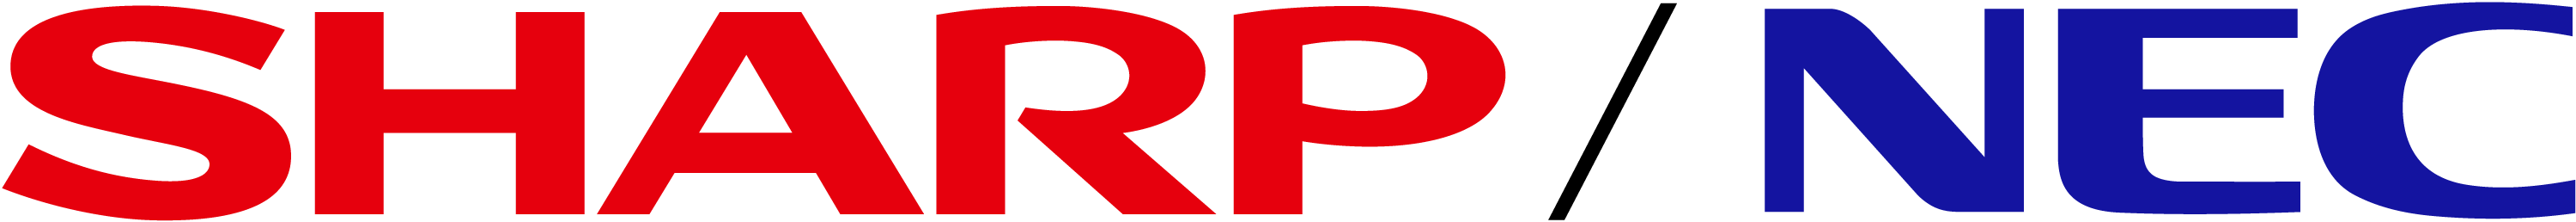 logos_SHARP_NEC_ロゴ_RGB